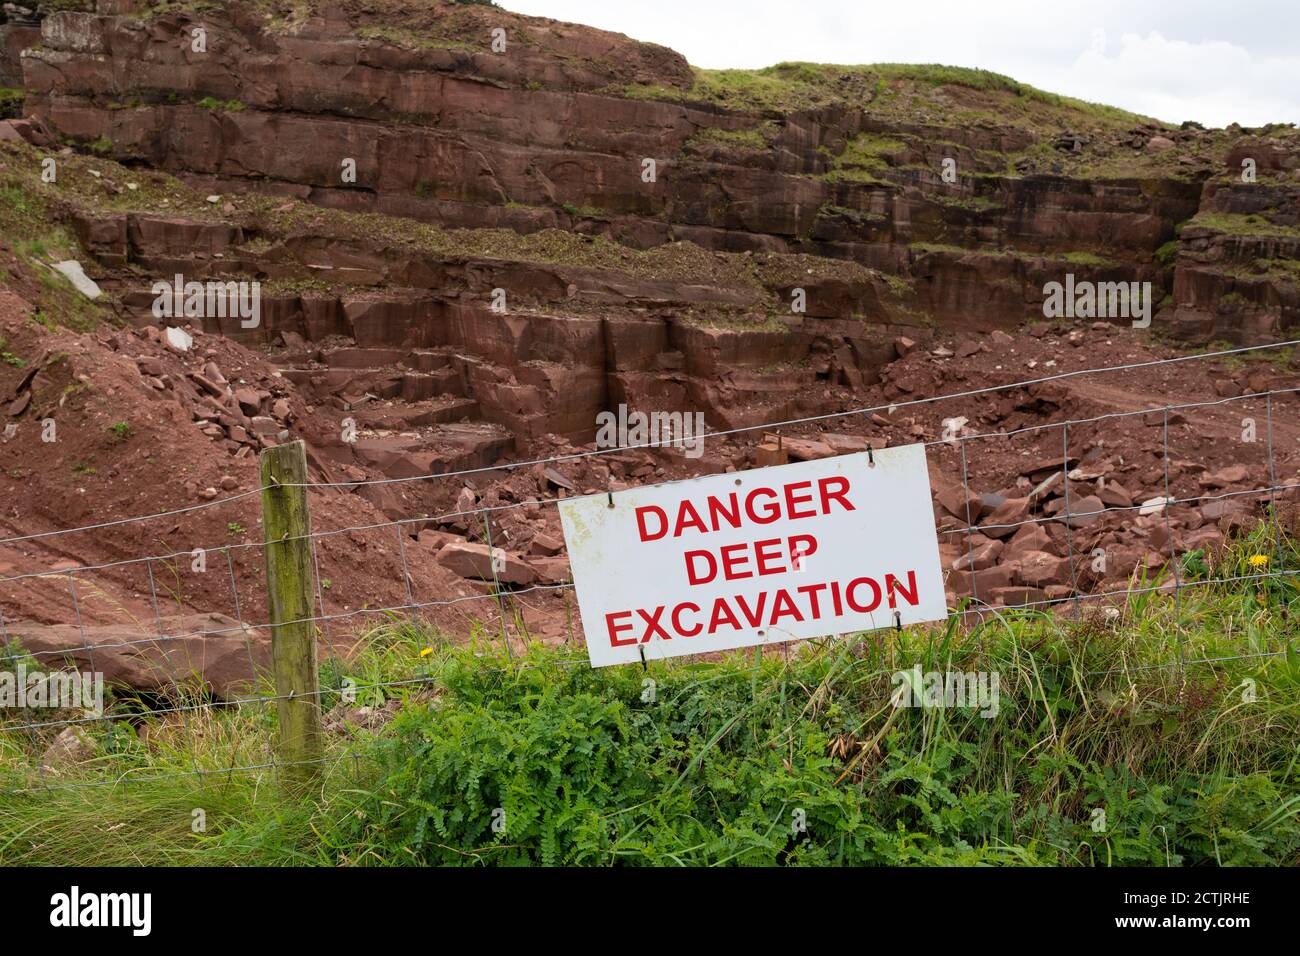 Danger Deep excavation panneau d'avertissement à Marshalls St Bees Quarry, St Bees, Cumbria, Angleterre, Royaume-Uni Banque D'Images